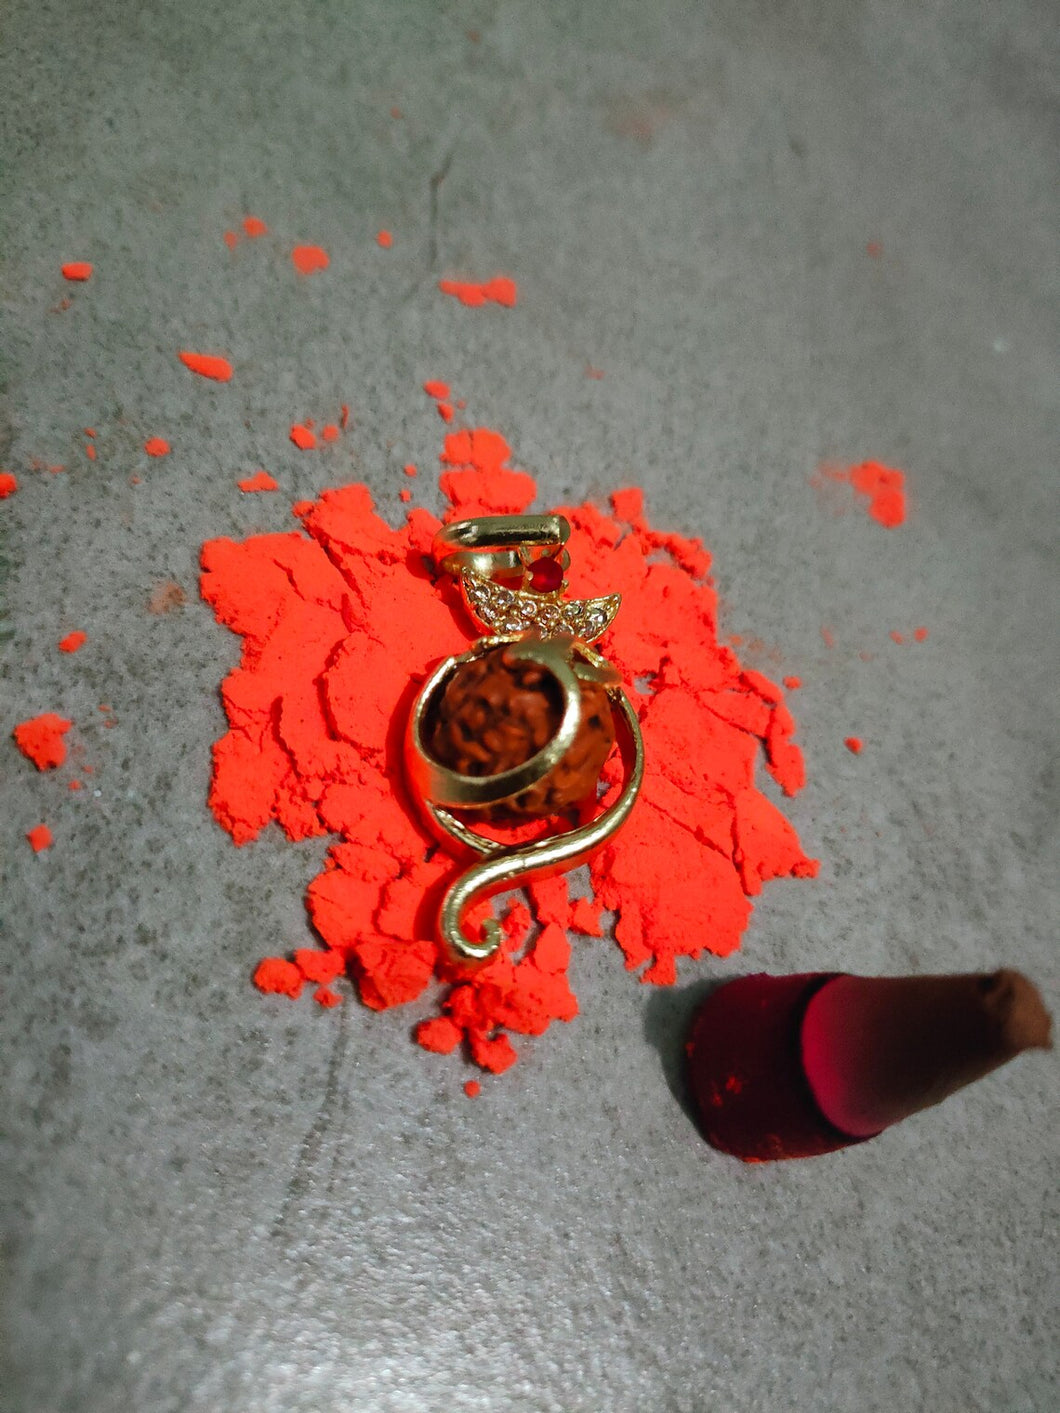 Change Your Life Forever' Enshrined rudraksha Of Brobdingnagian Regnant' all blessings Mahakal Rudra Pendant